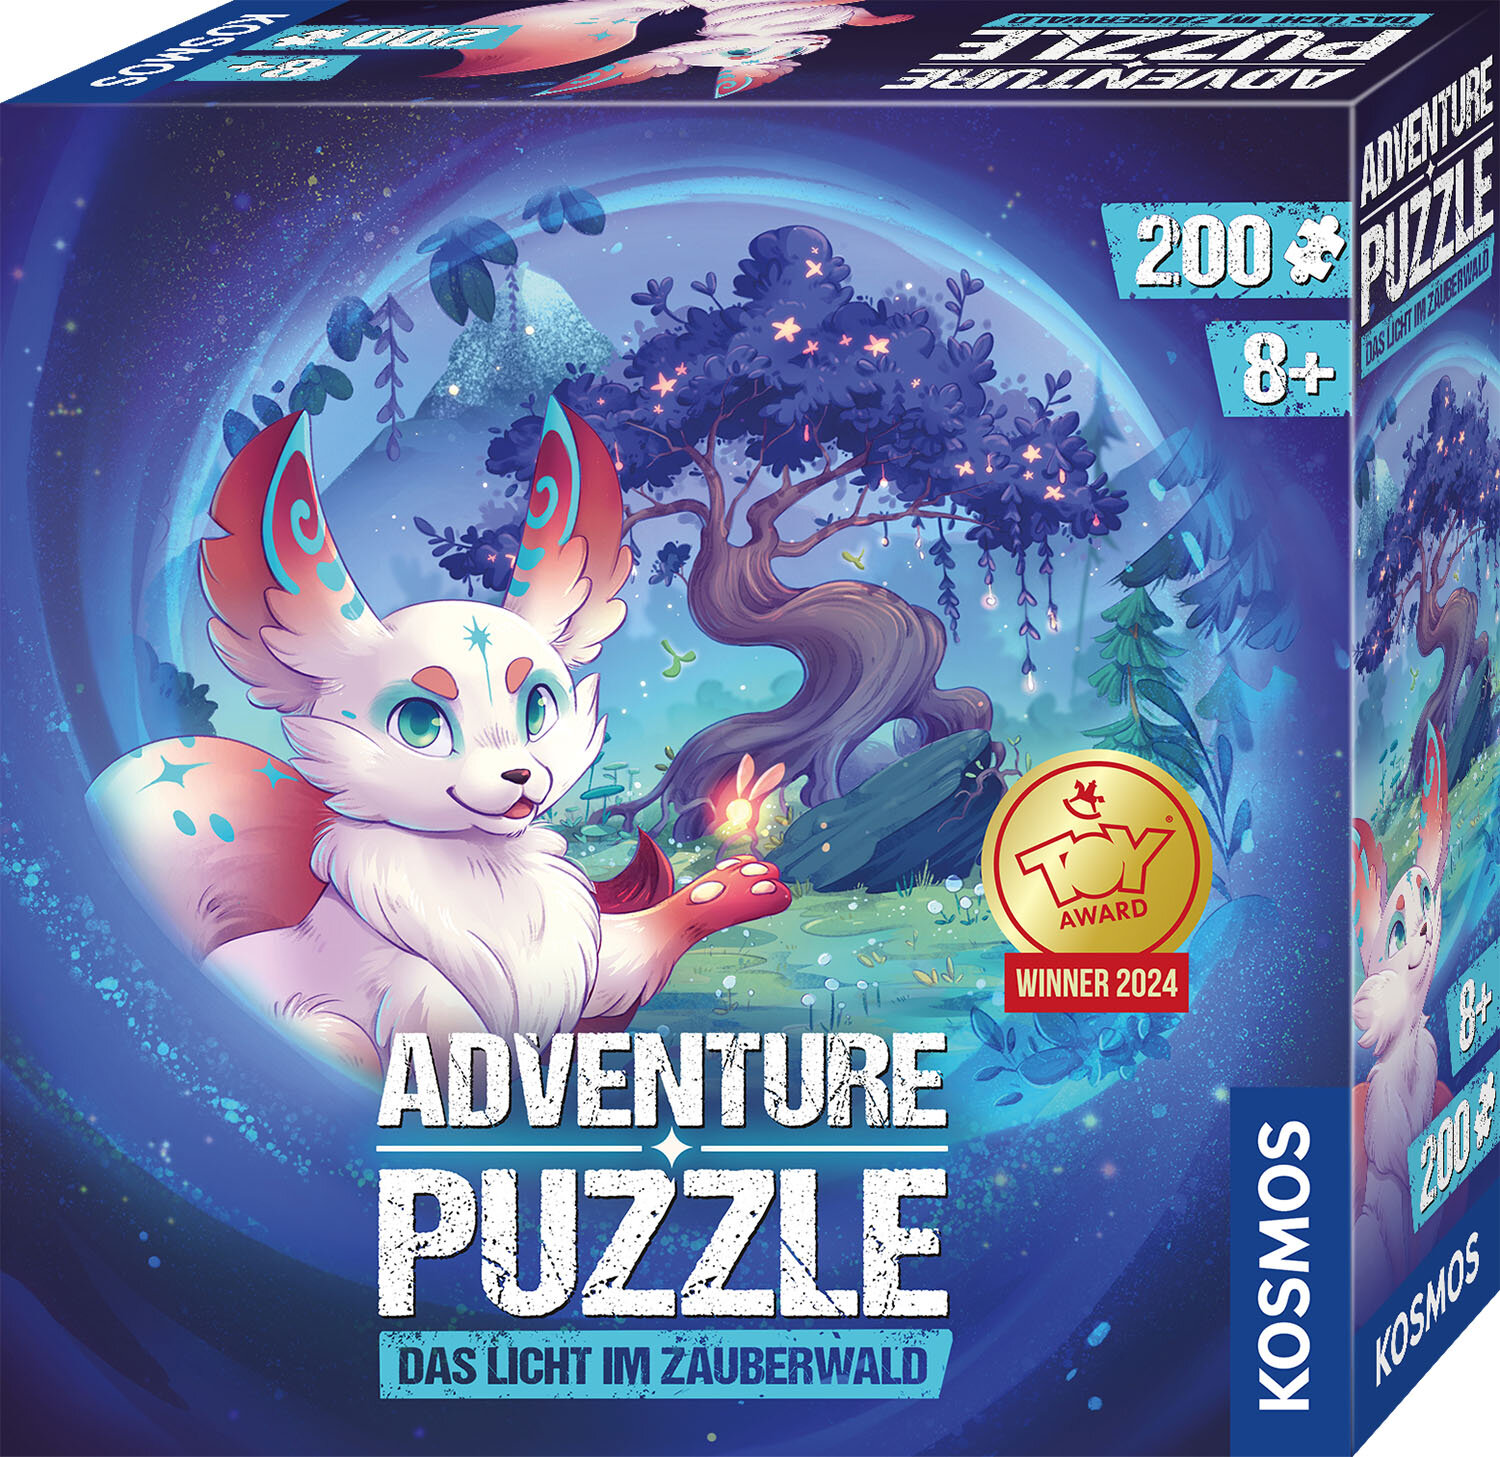 Adventure Puzzle: Das Licht im Zauberwald